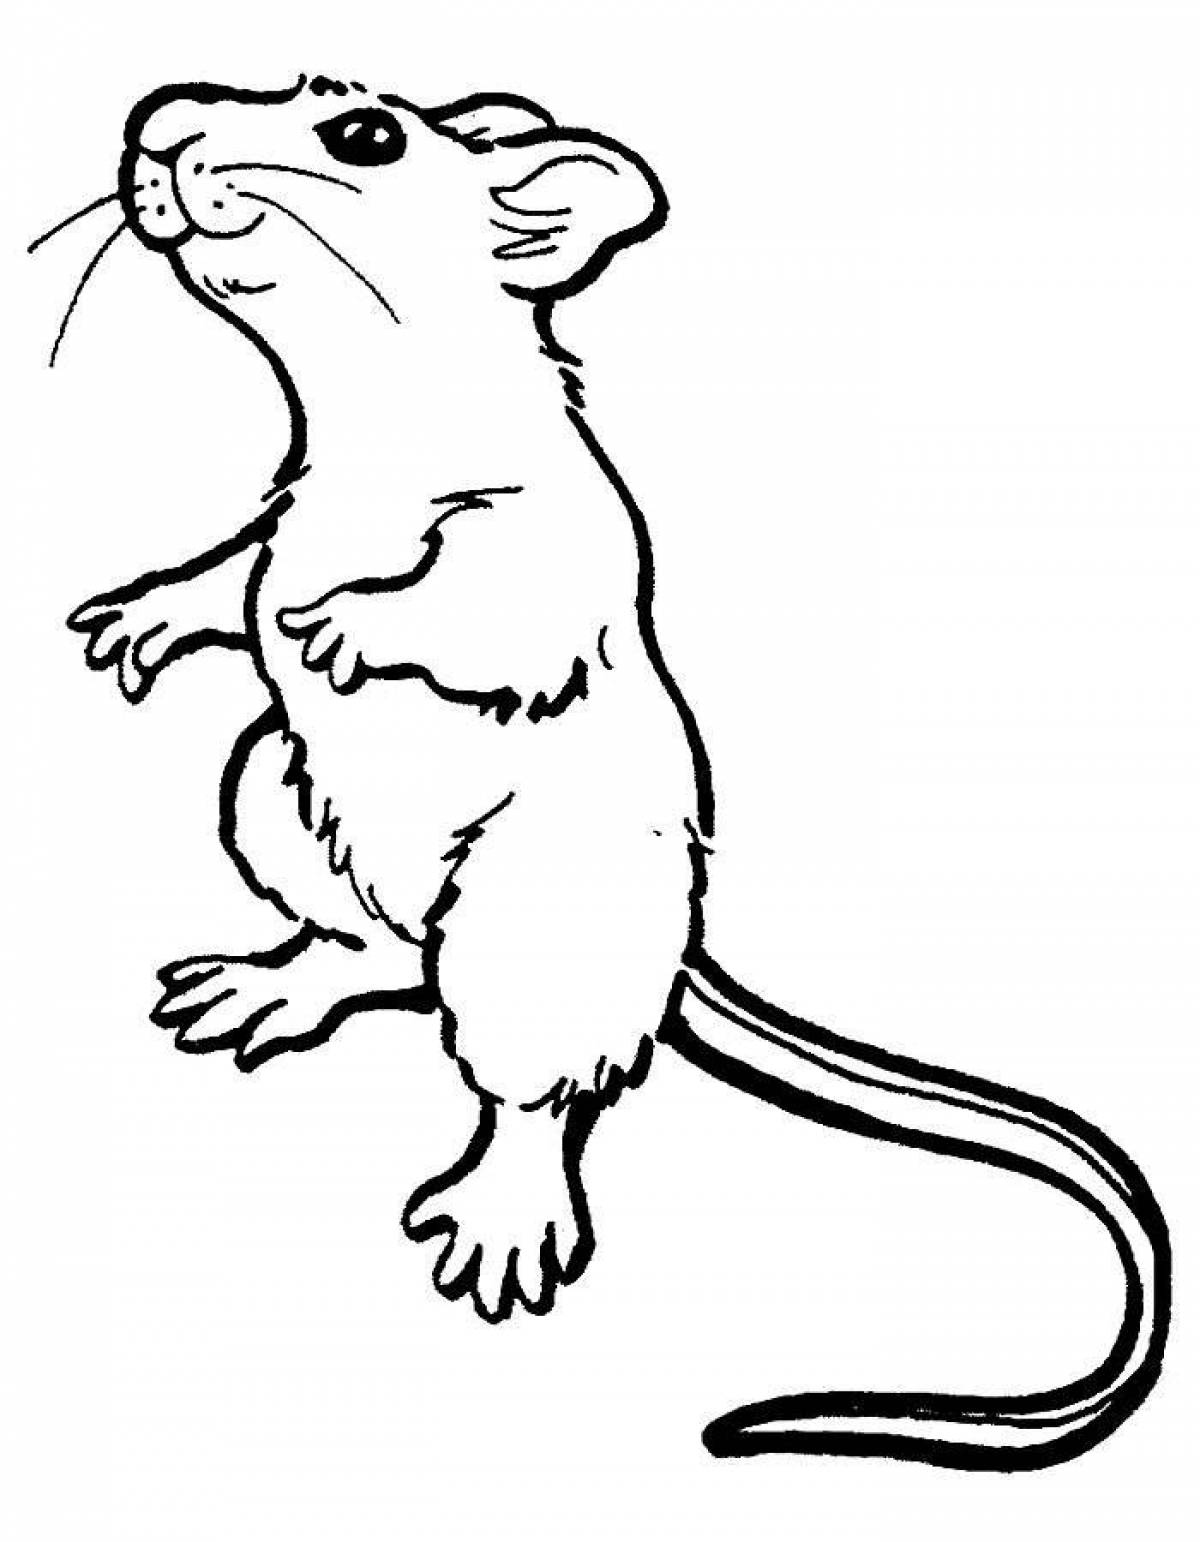 Rat #1